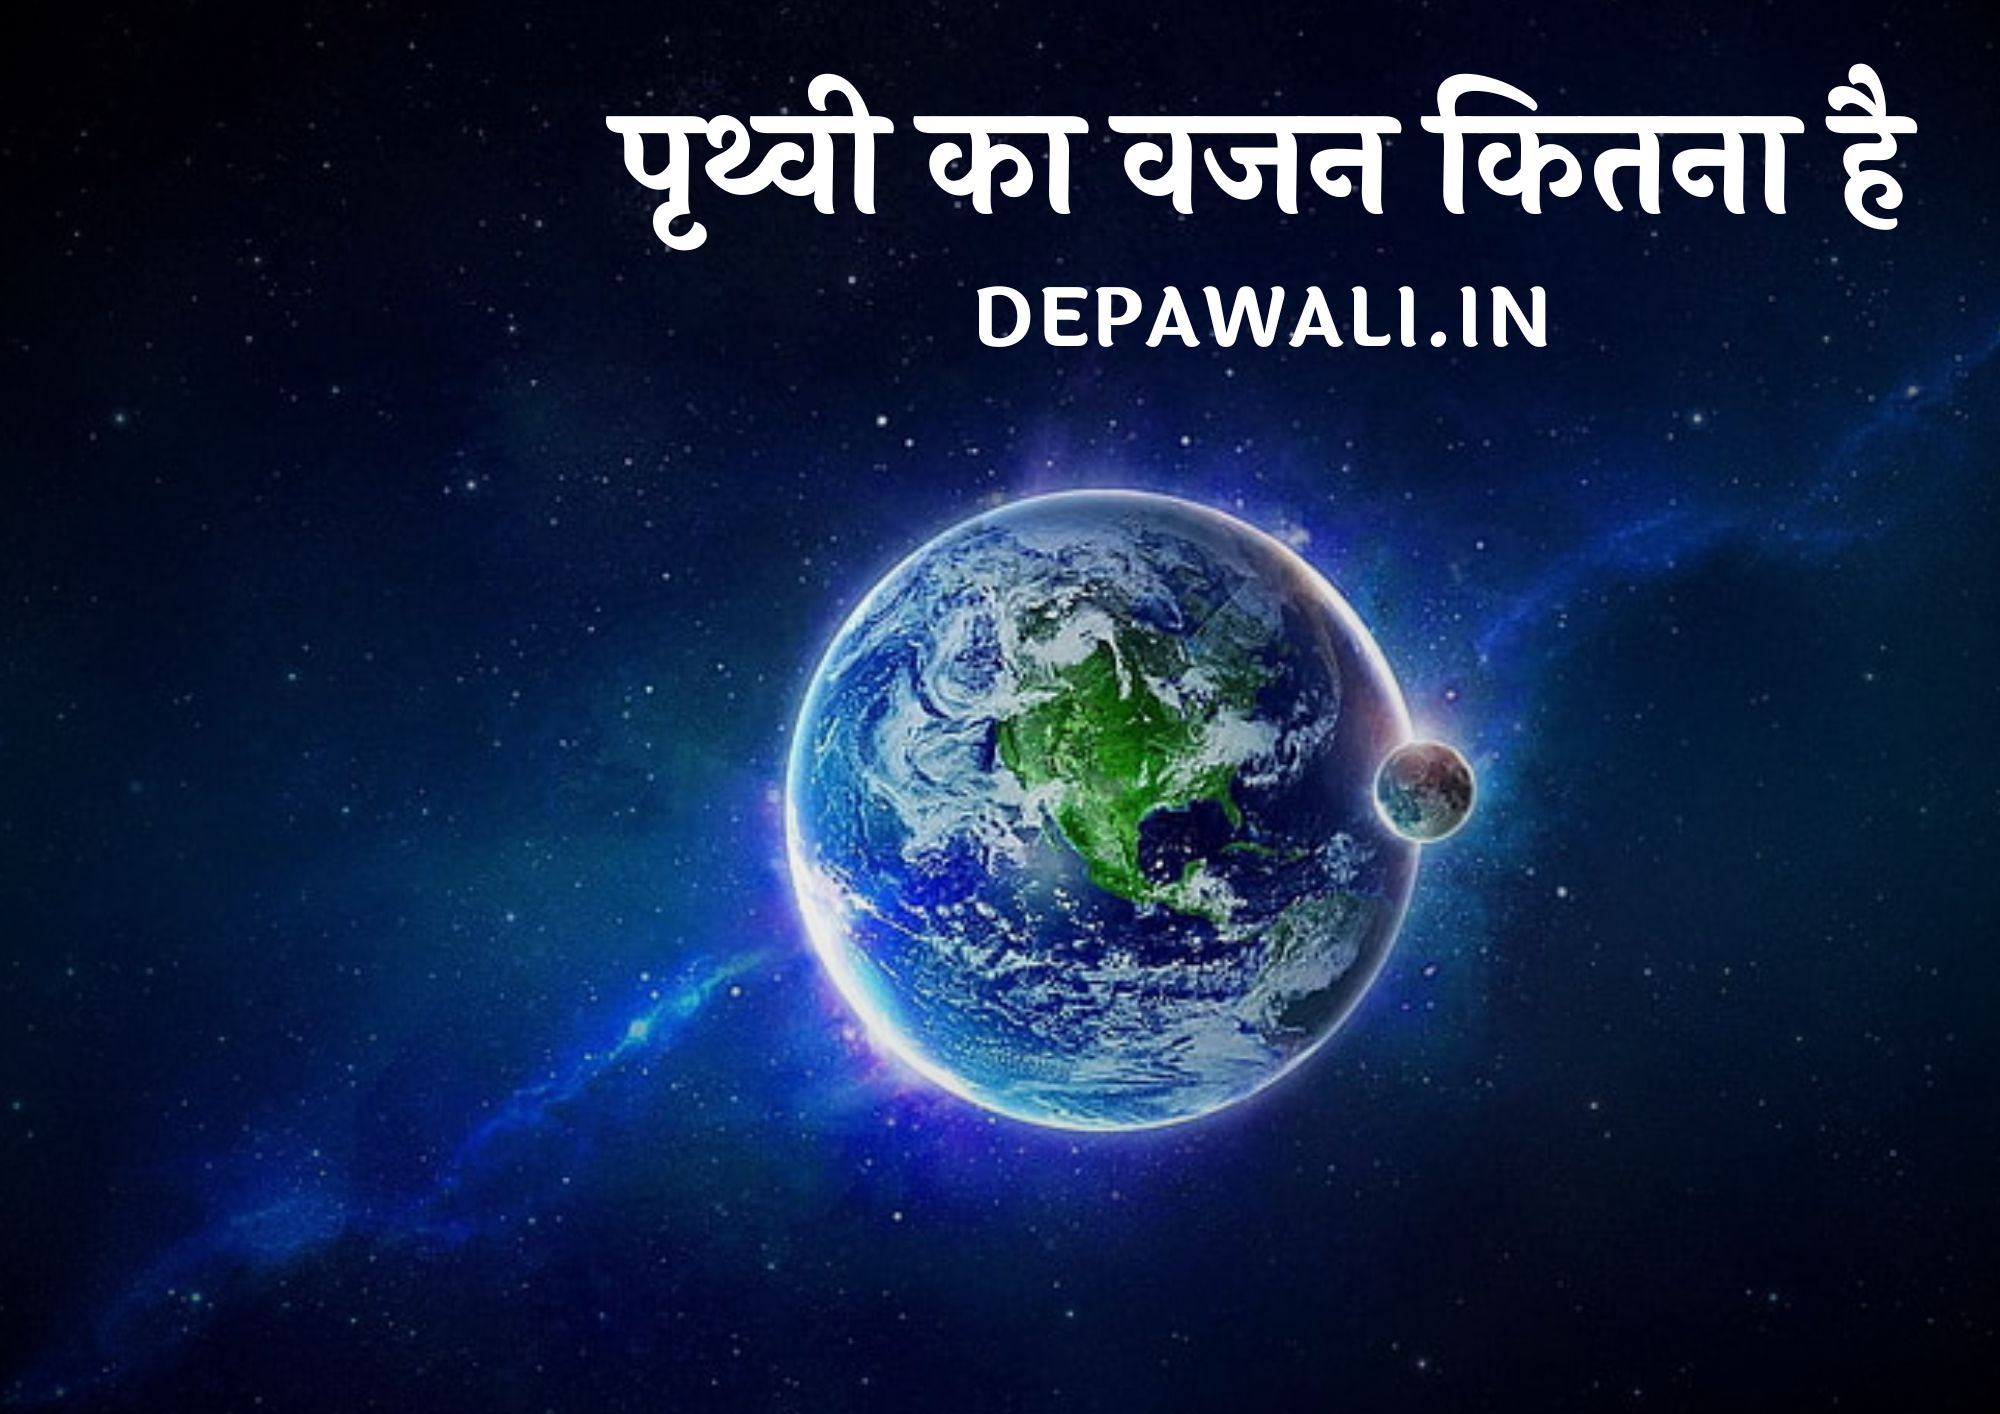 पृथ्वी का वजन कितना है, धरती का वजन कितना है - Dharti Ka Wajan Kitna Hai